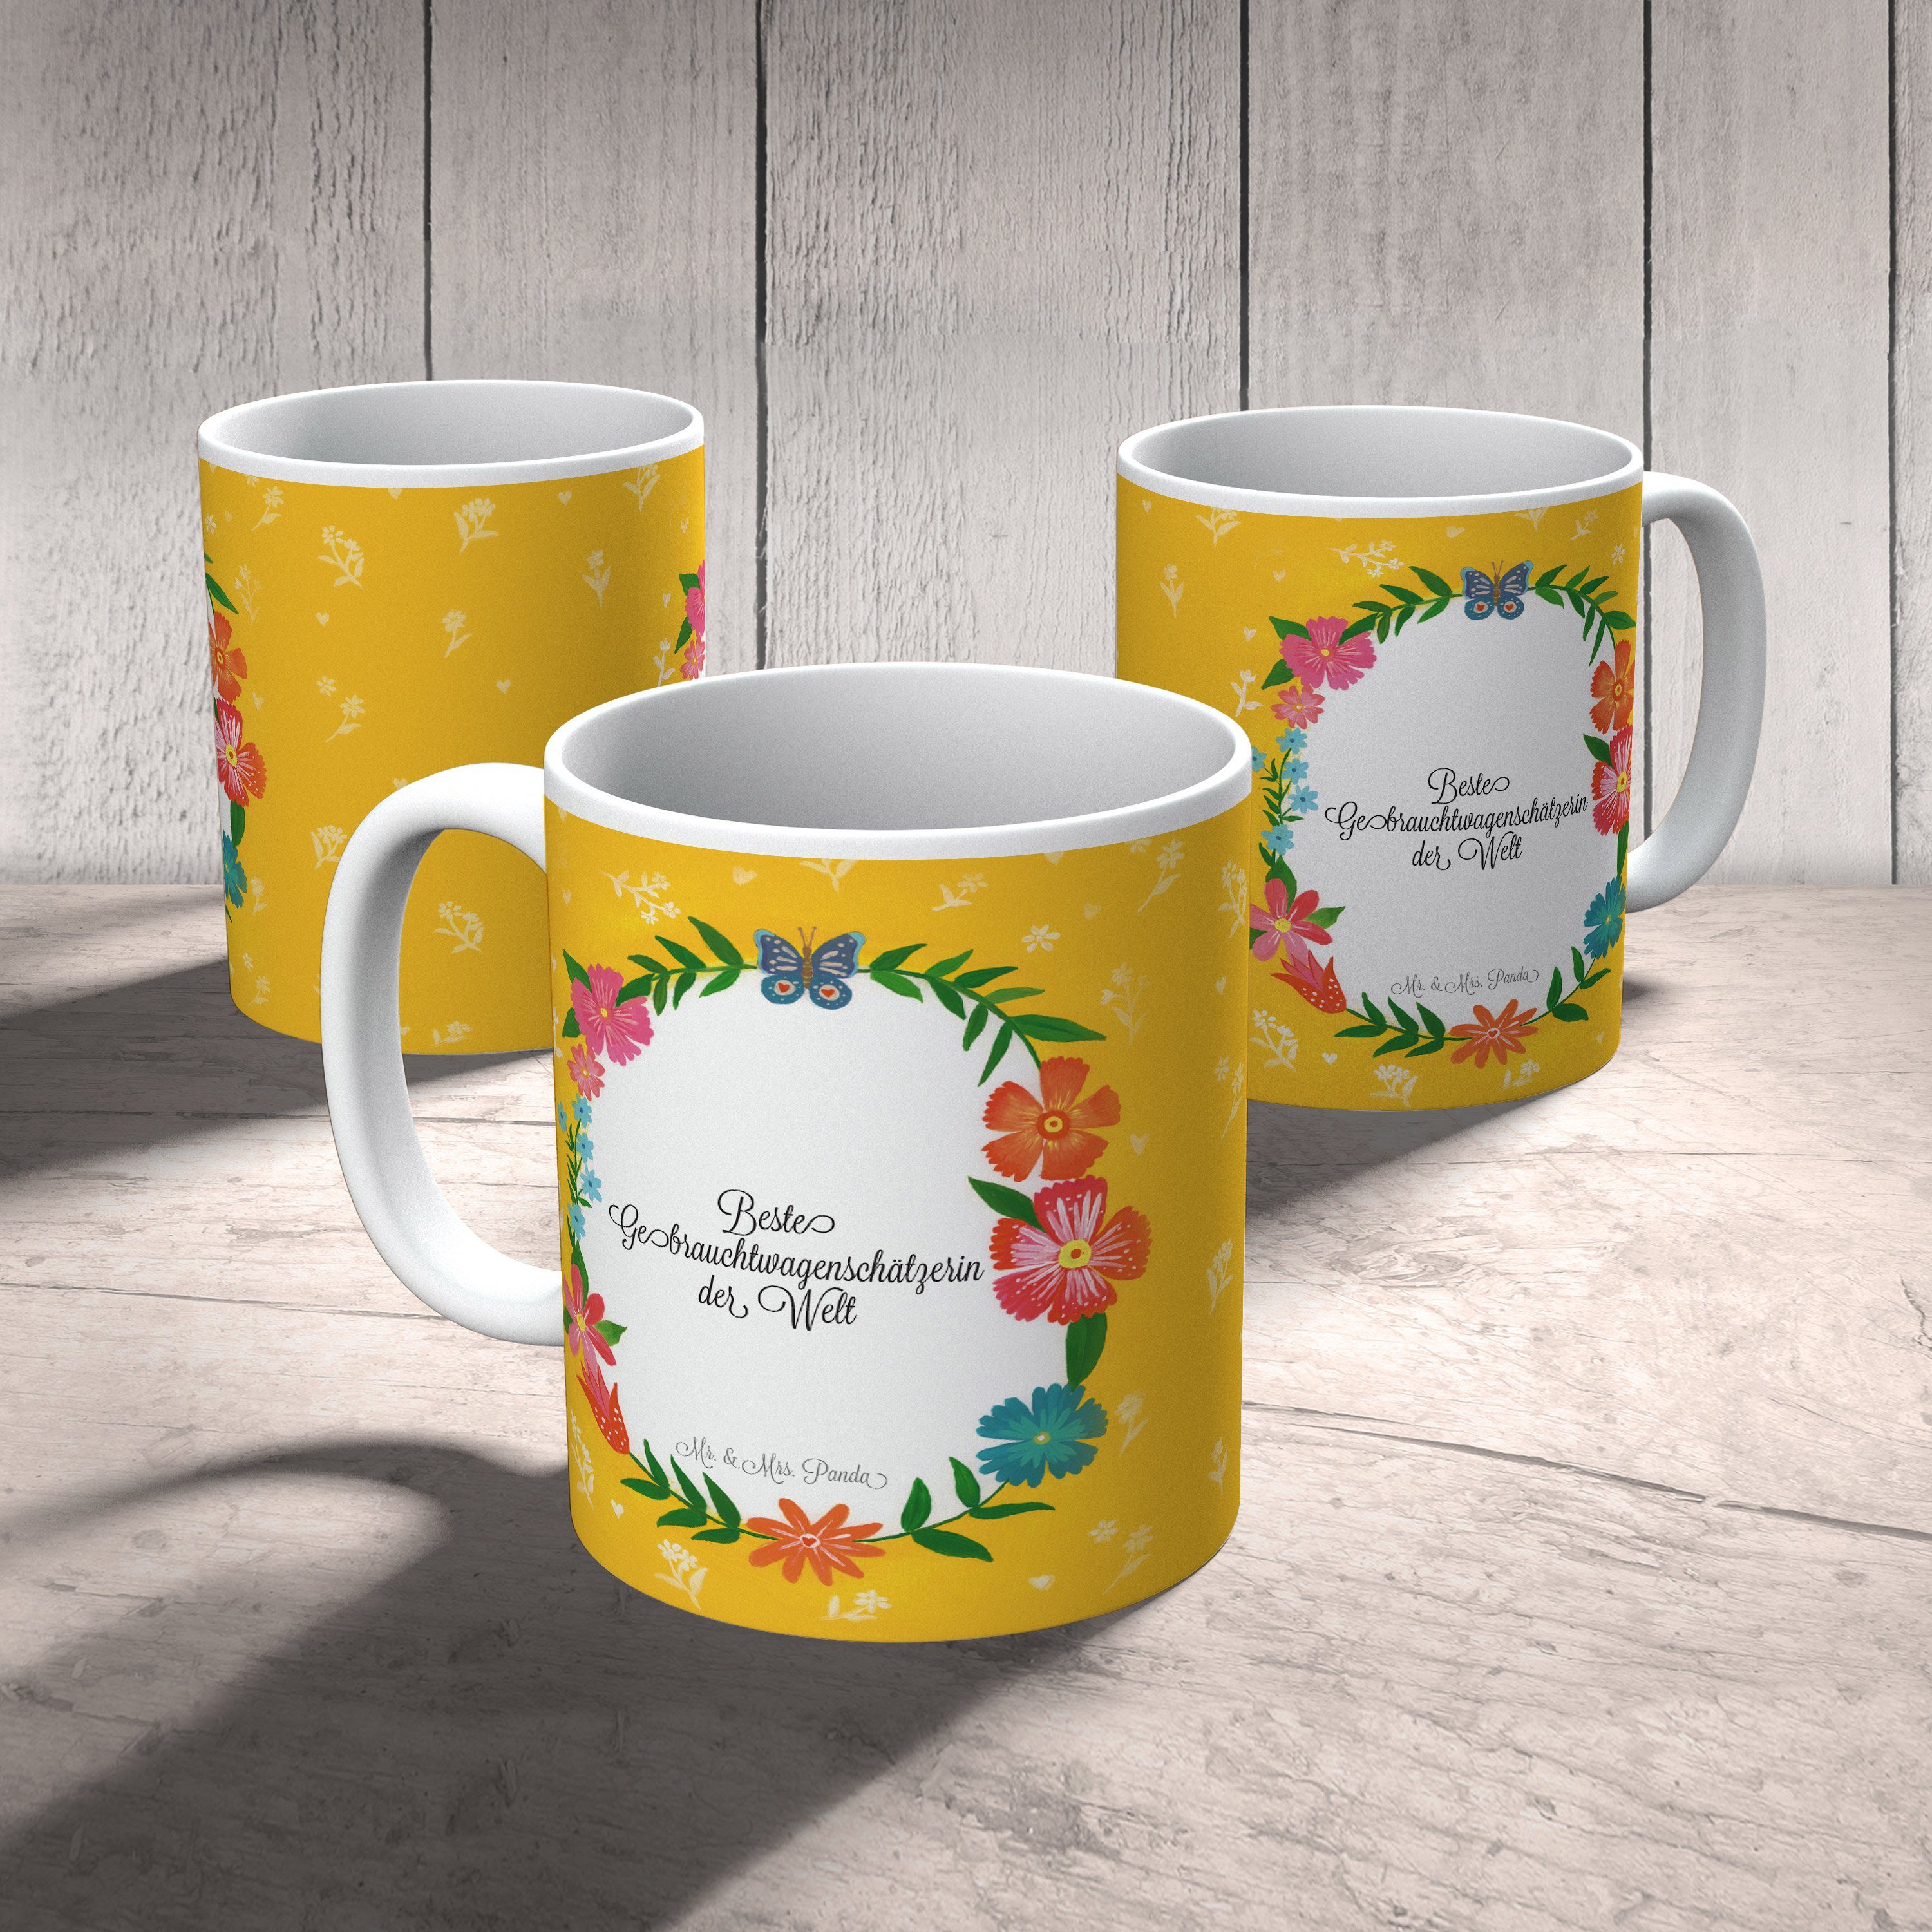 Panda Keramik Tasse, & Mr. - Geschenk Tasse Tasse, Mrs. Gebrauchtwagenschätzerin Abschluss, Geschenk,